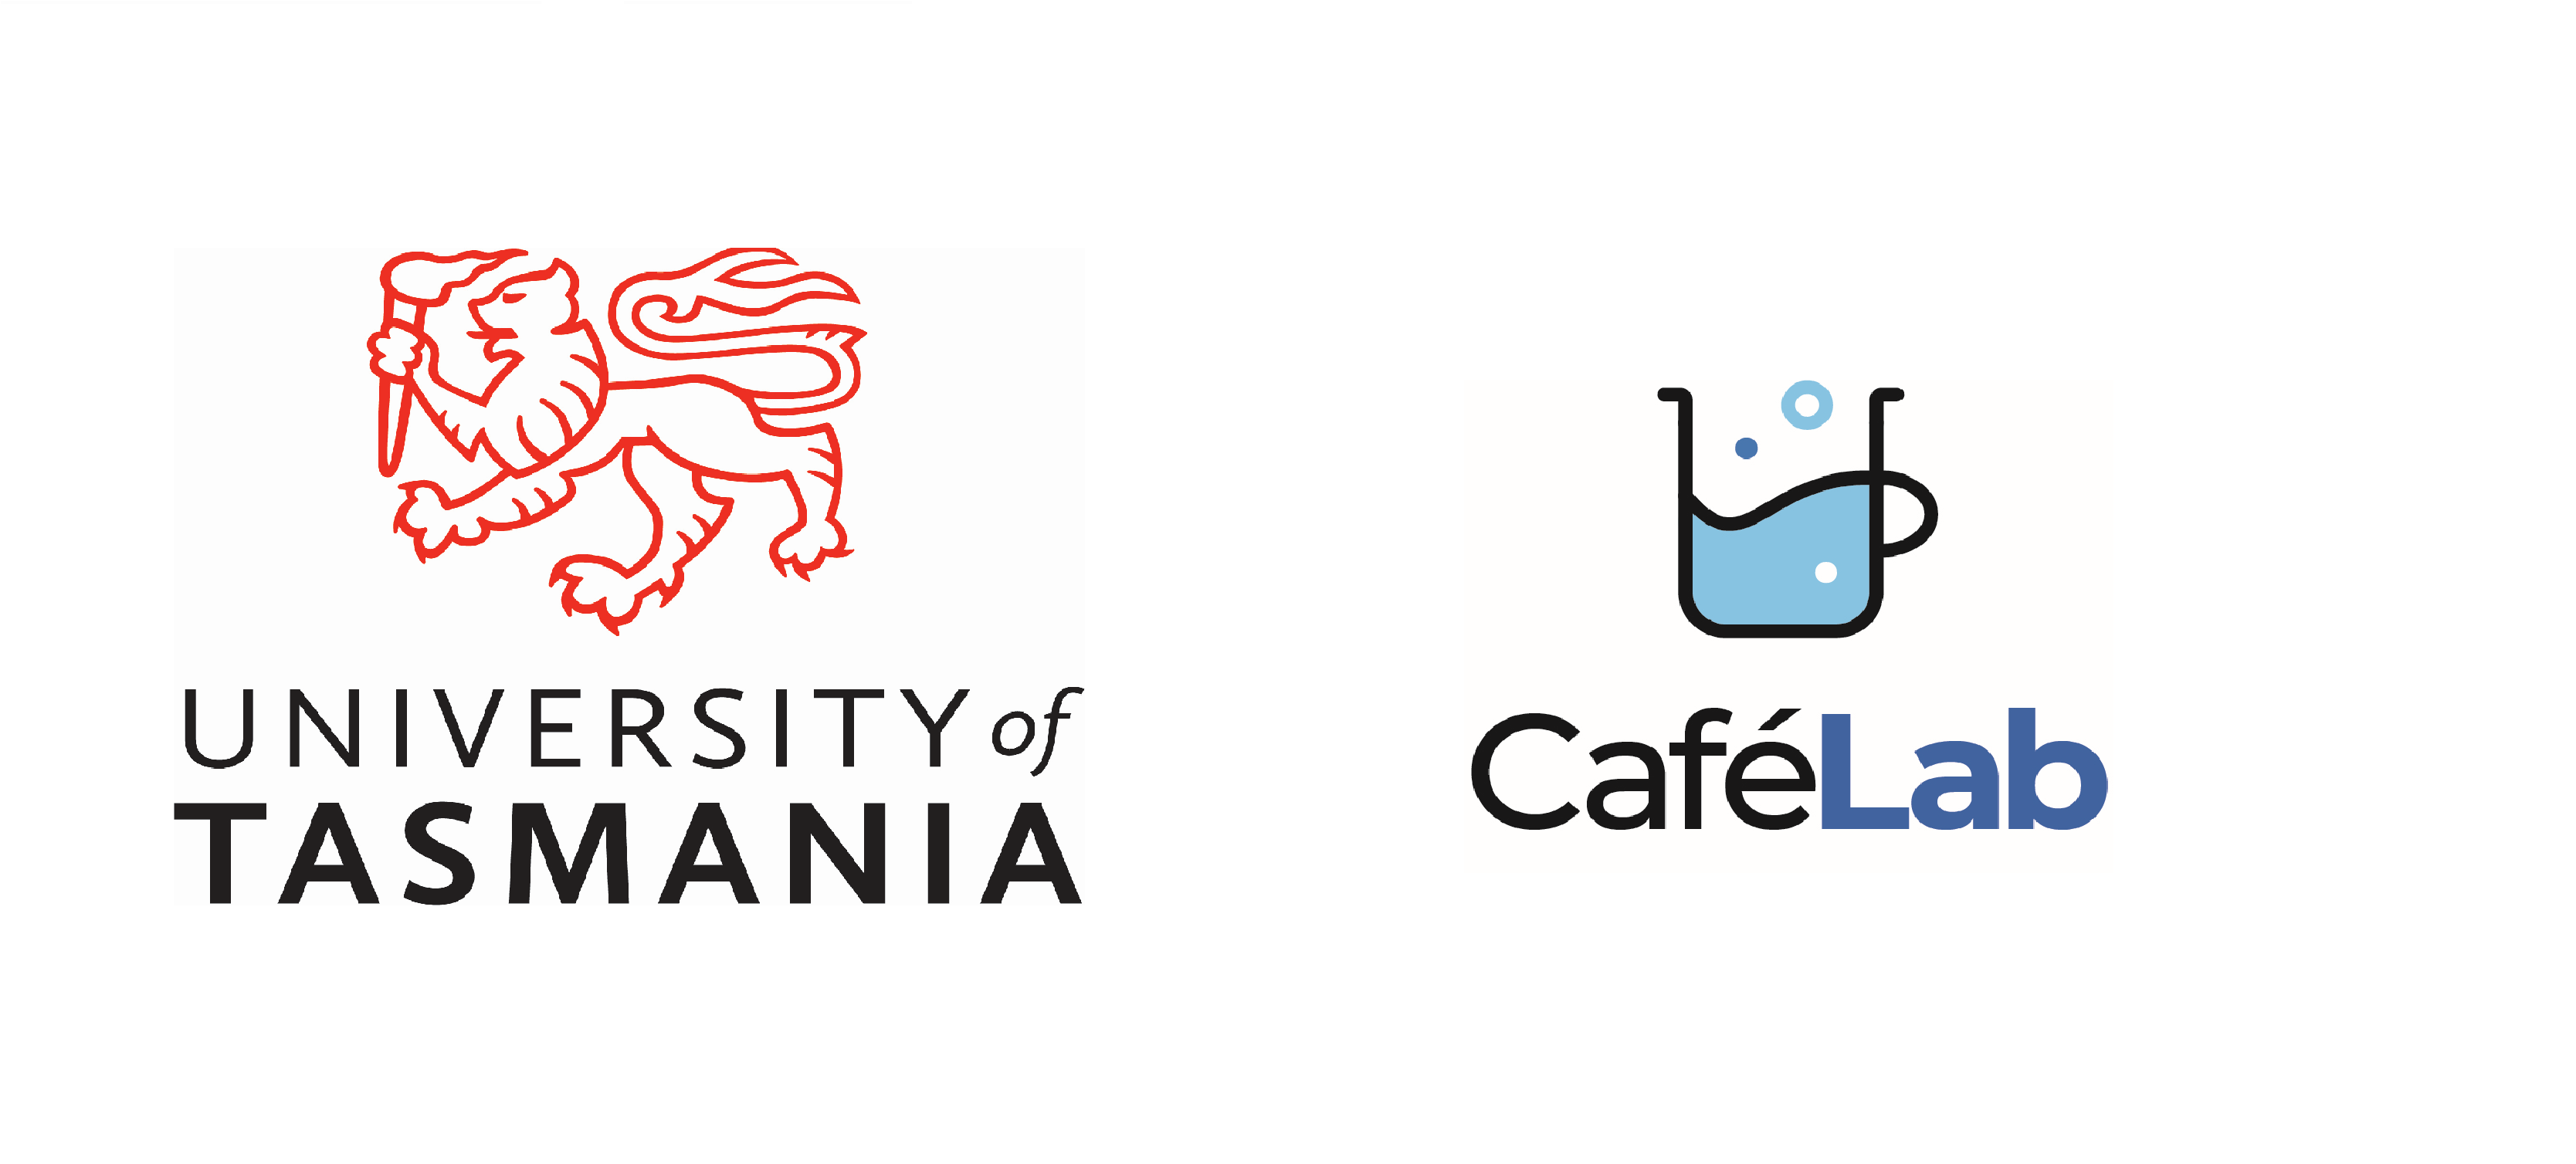 University of Tasmania log and Cafe Lab logo